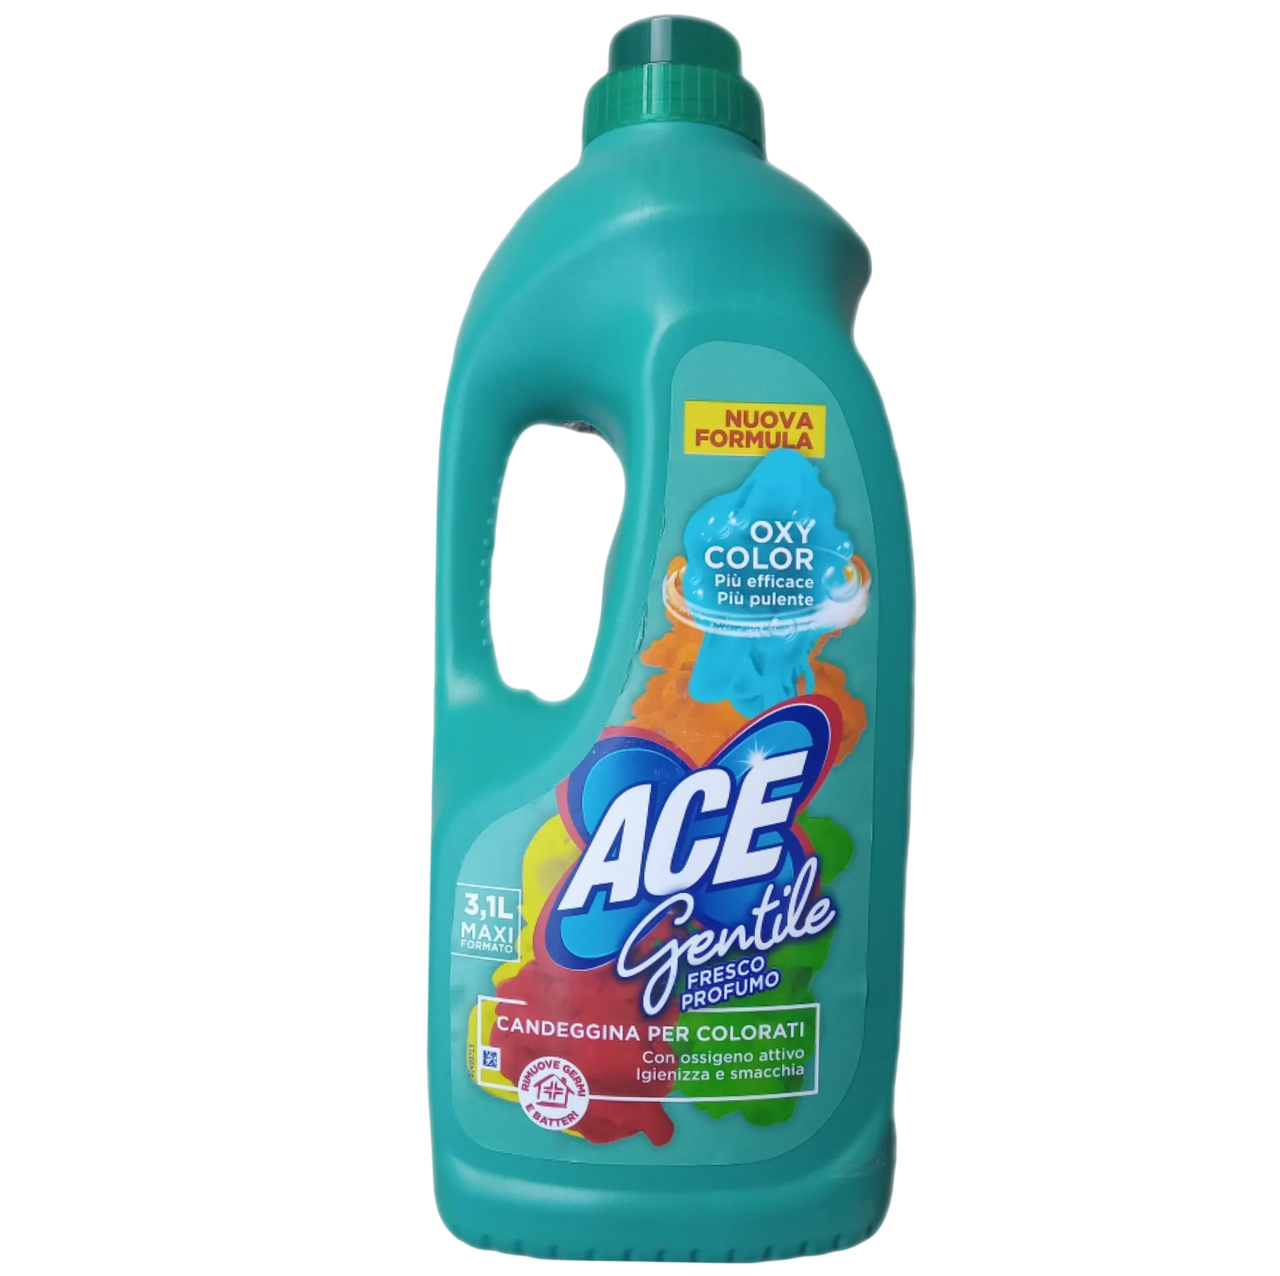 Засіб для прання ACE Gentile Profumo для виведення плям на кольорових речах 3,1 л